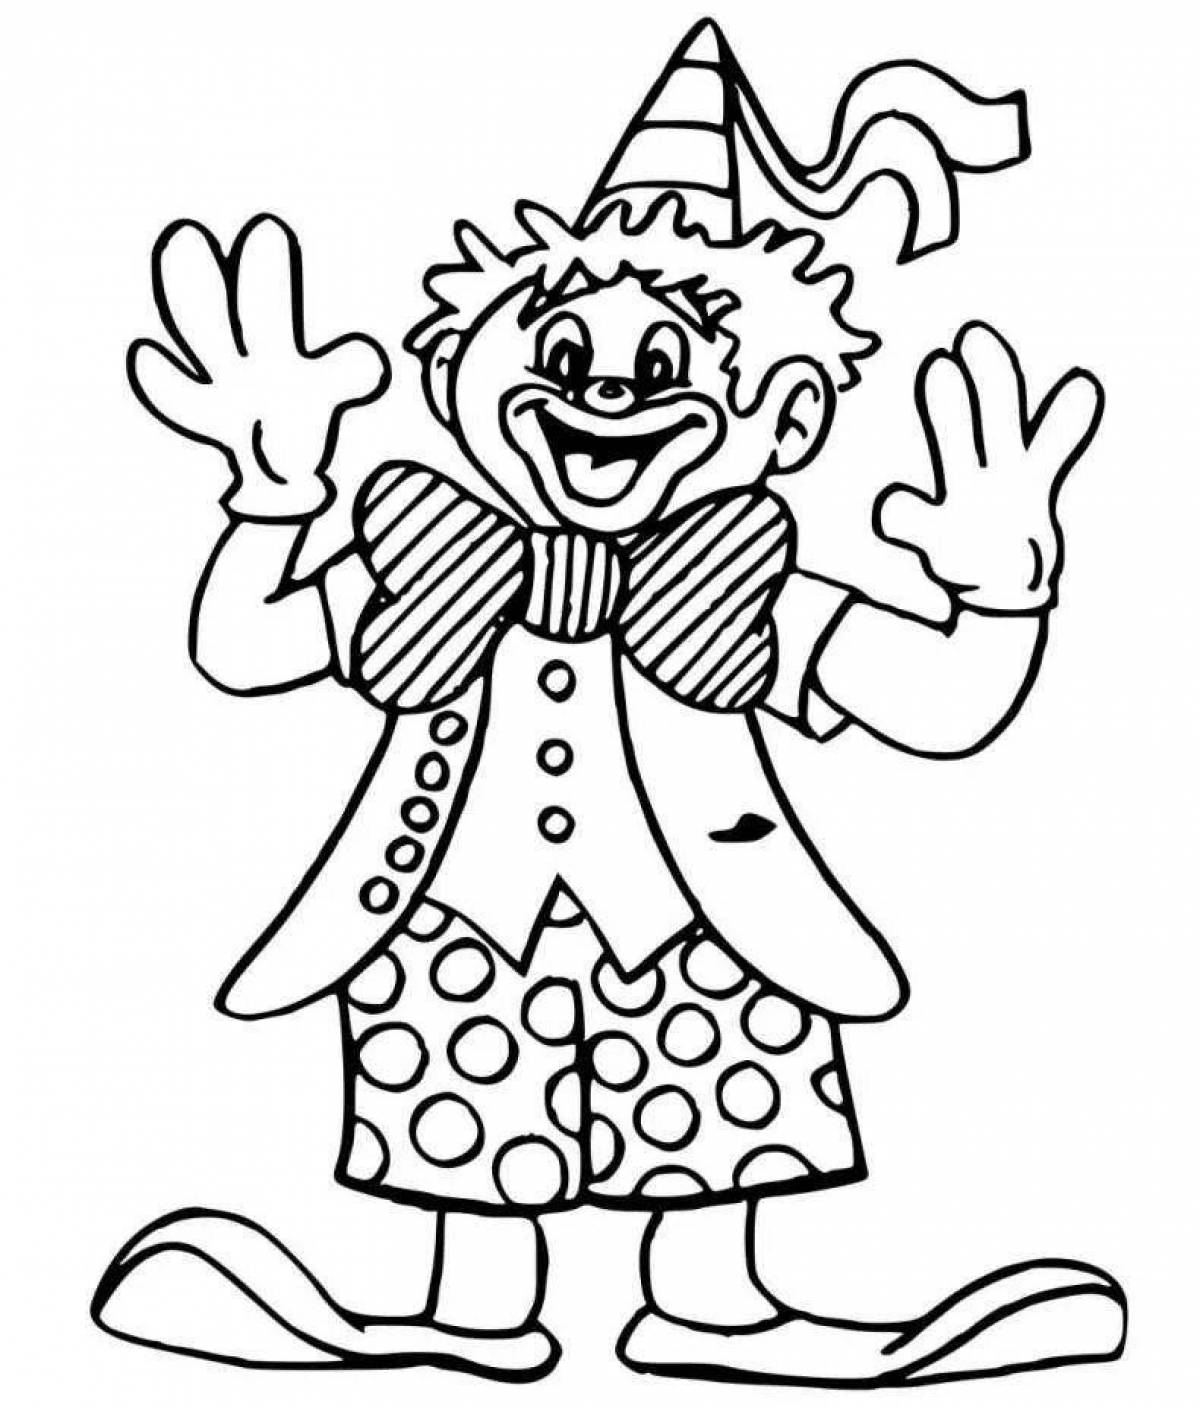 Zani jester coloring page